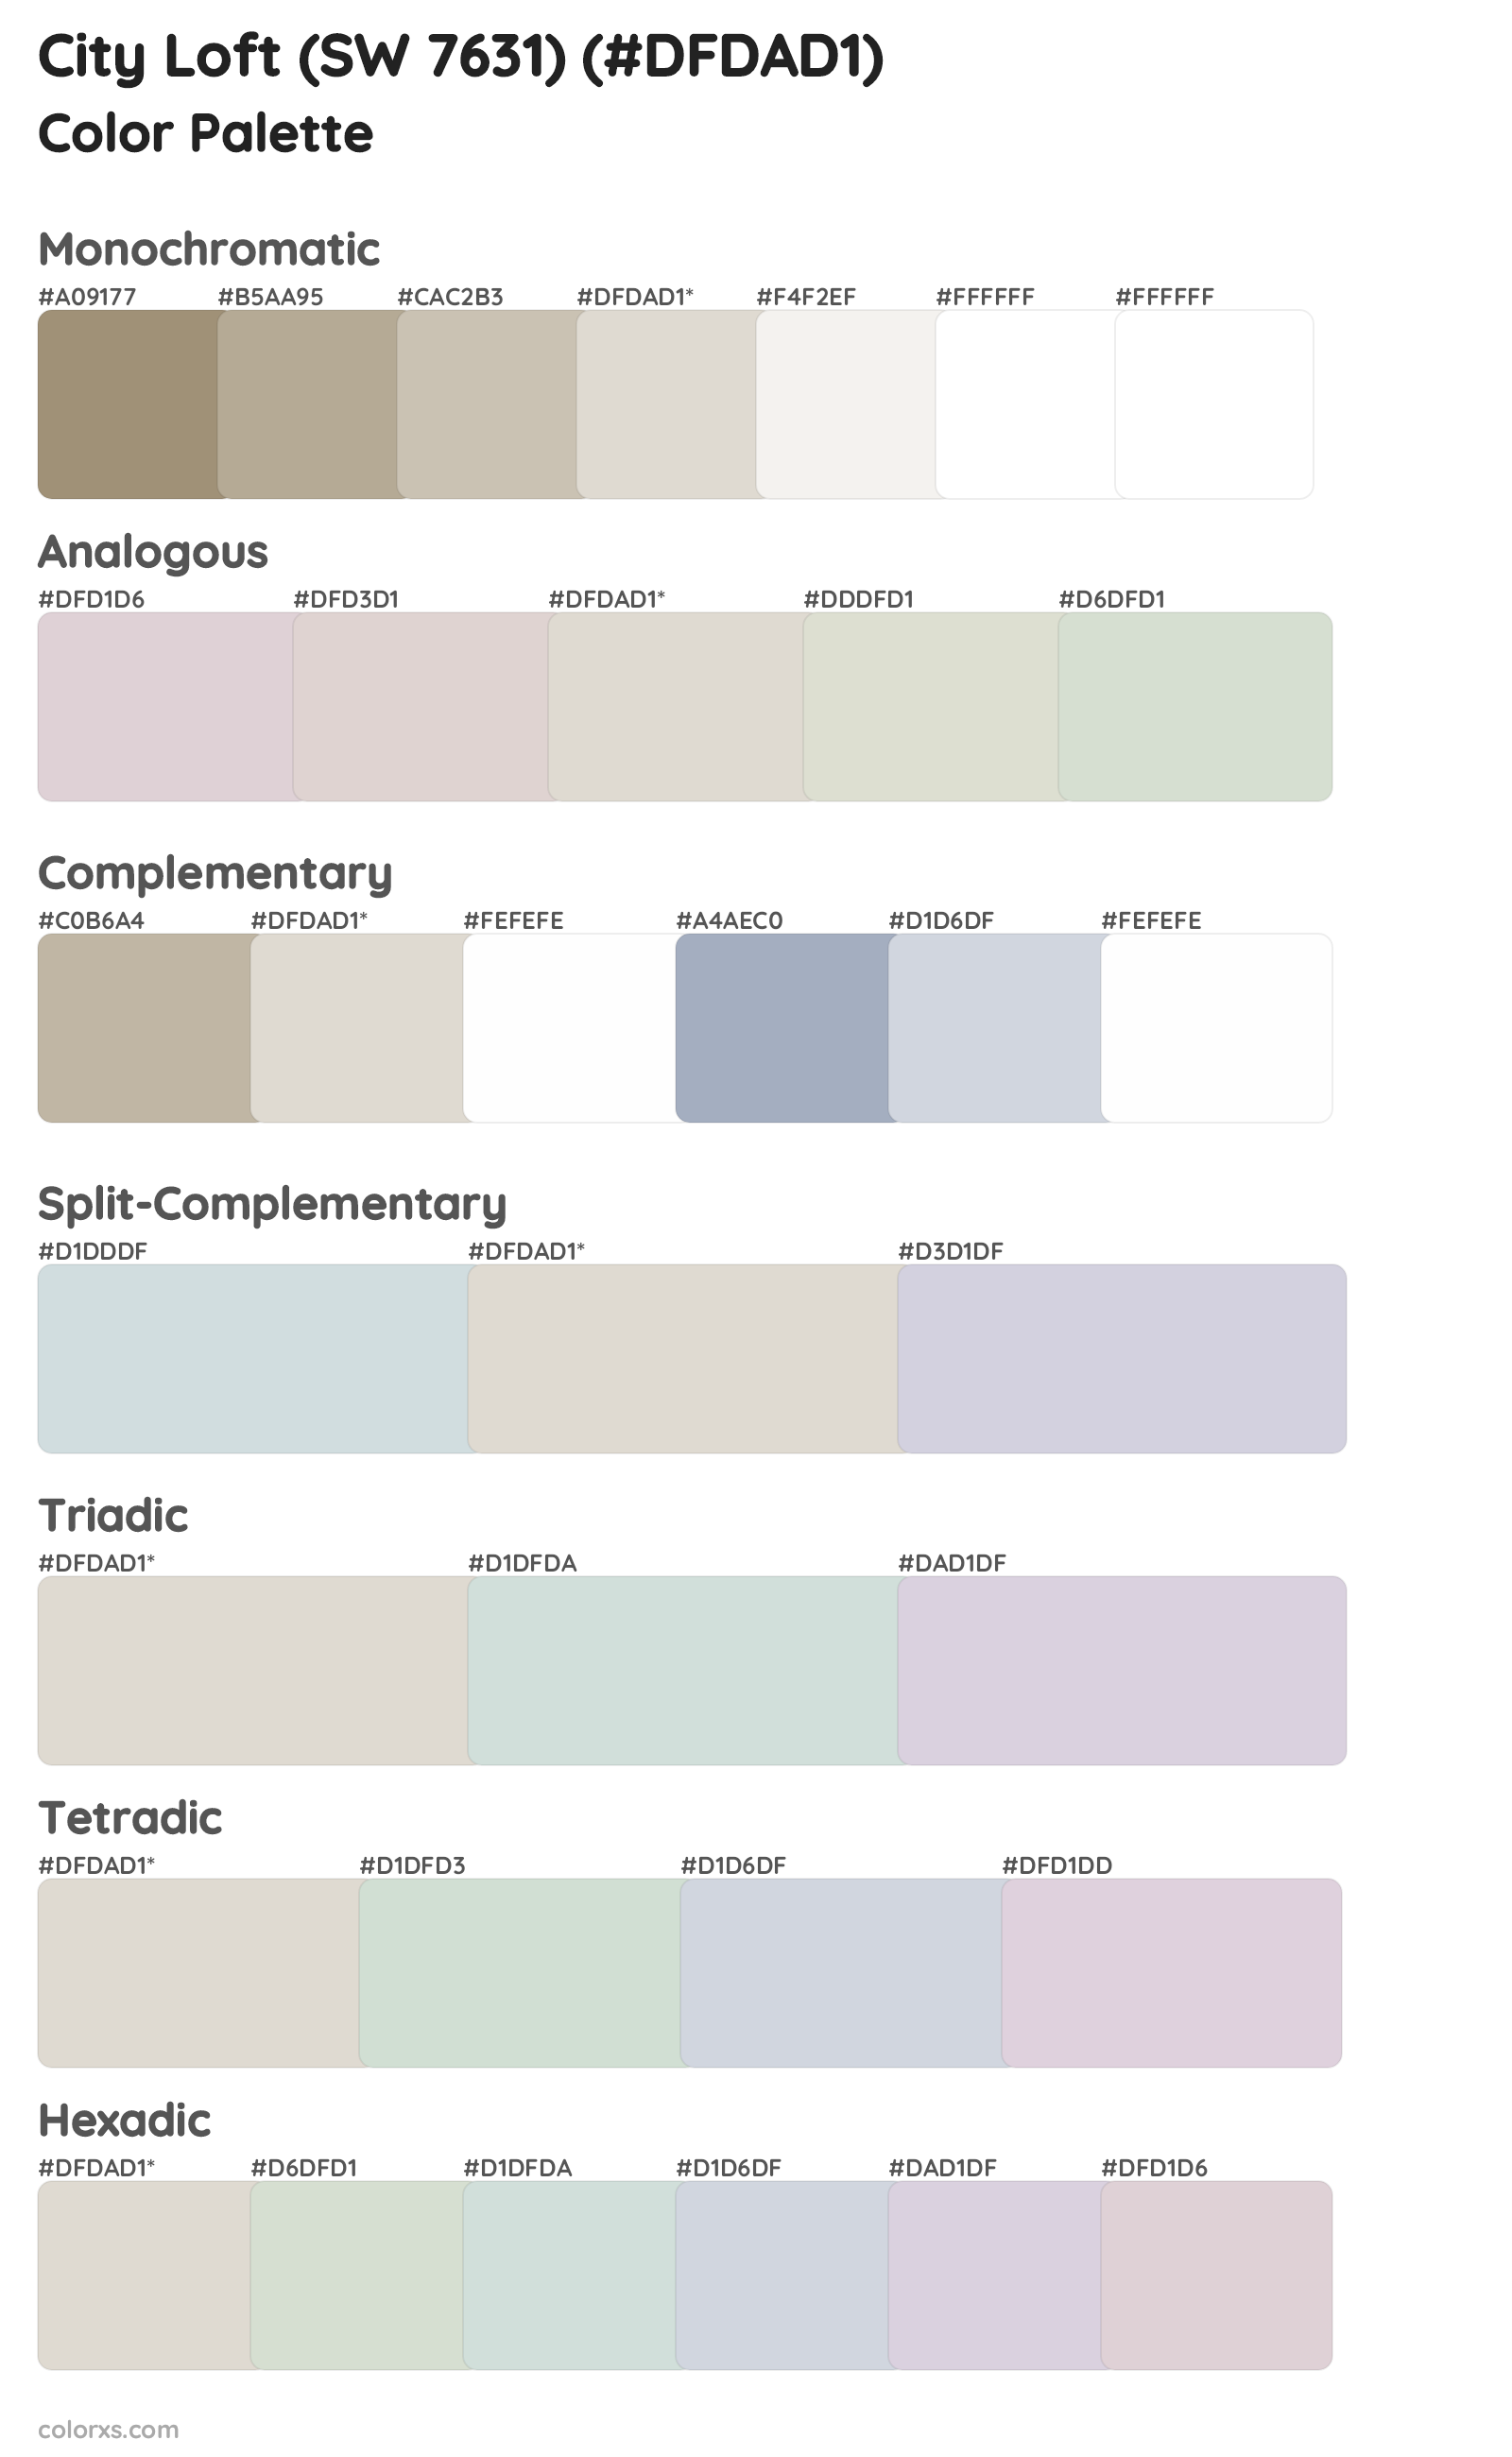 City Loft (SW 7631) Color Scheme Palettes